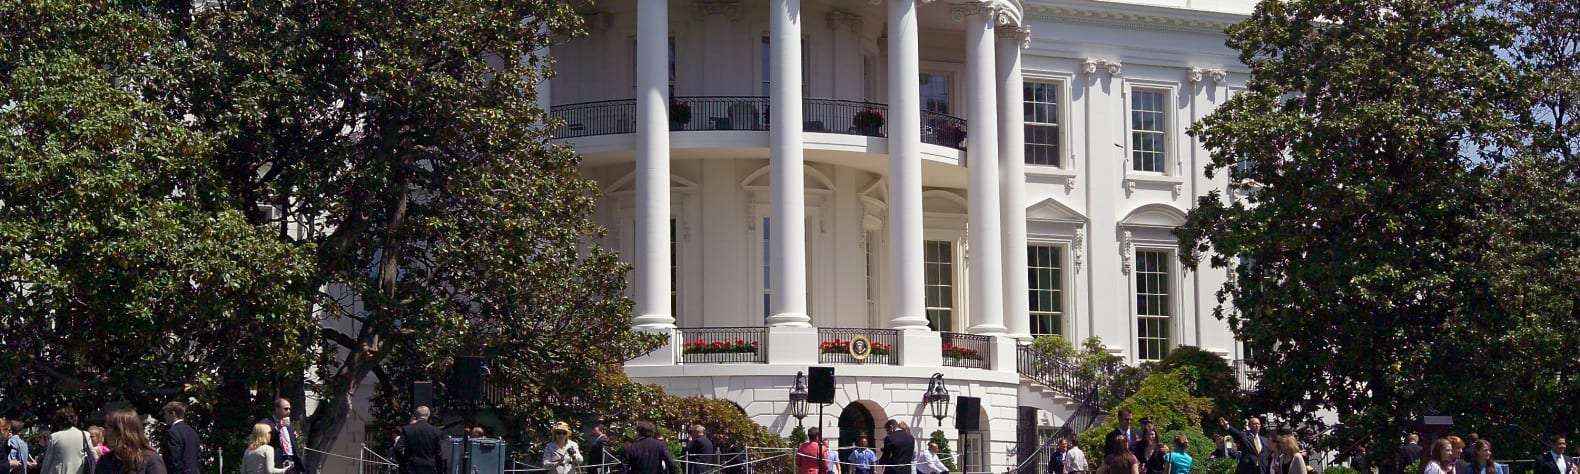 President's Park (White House)